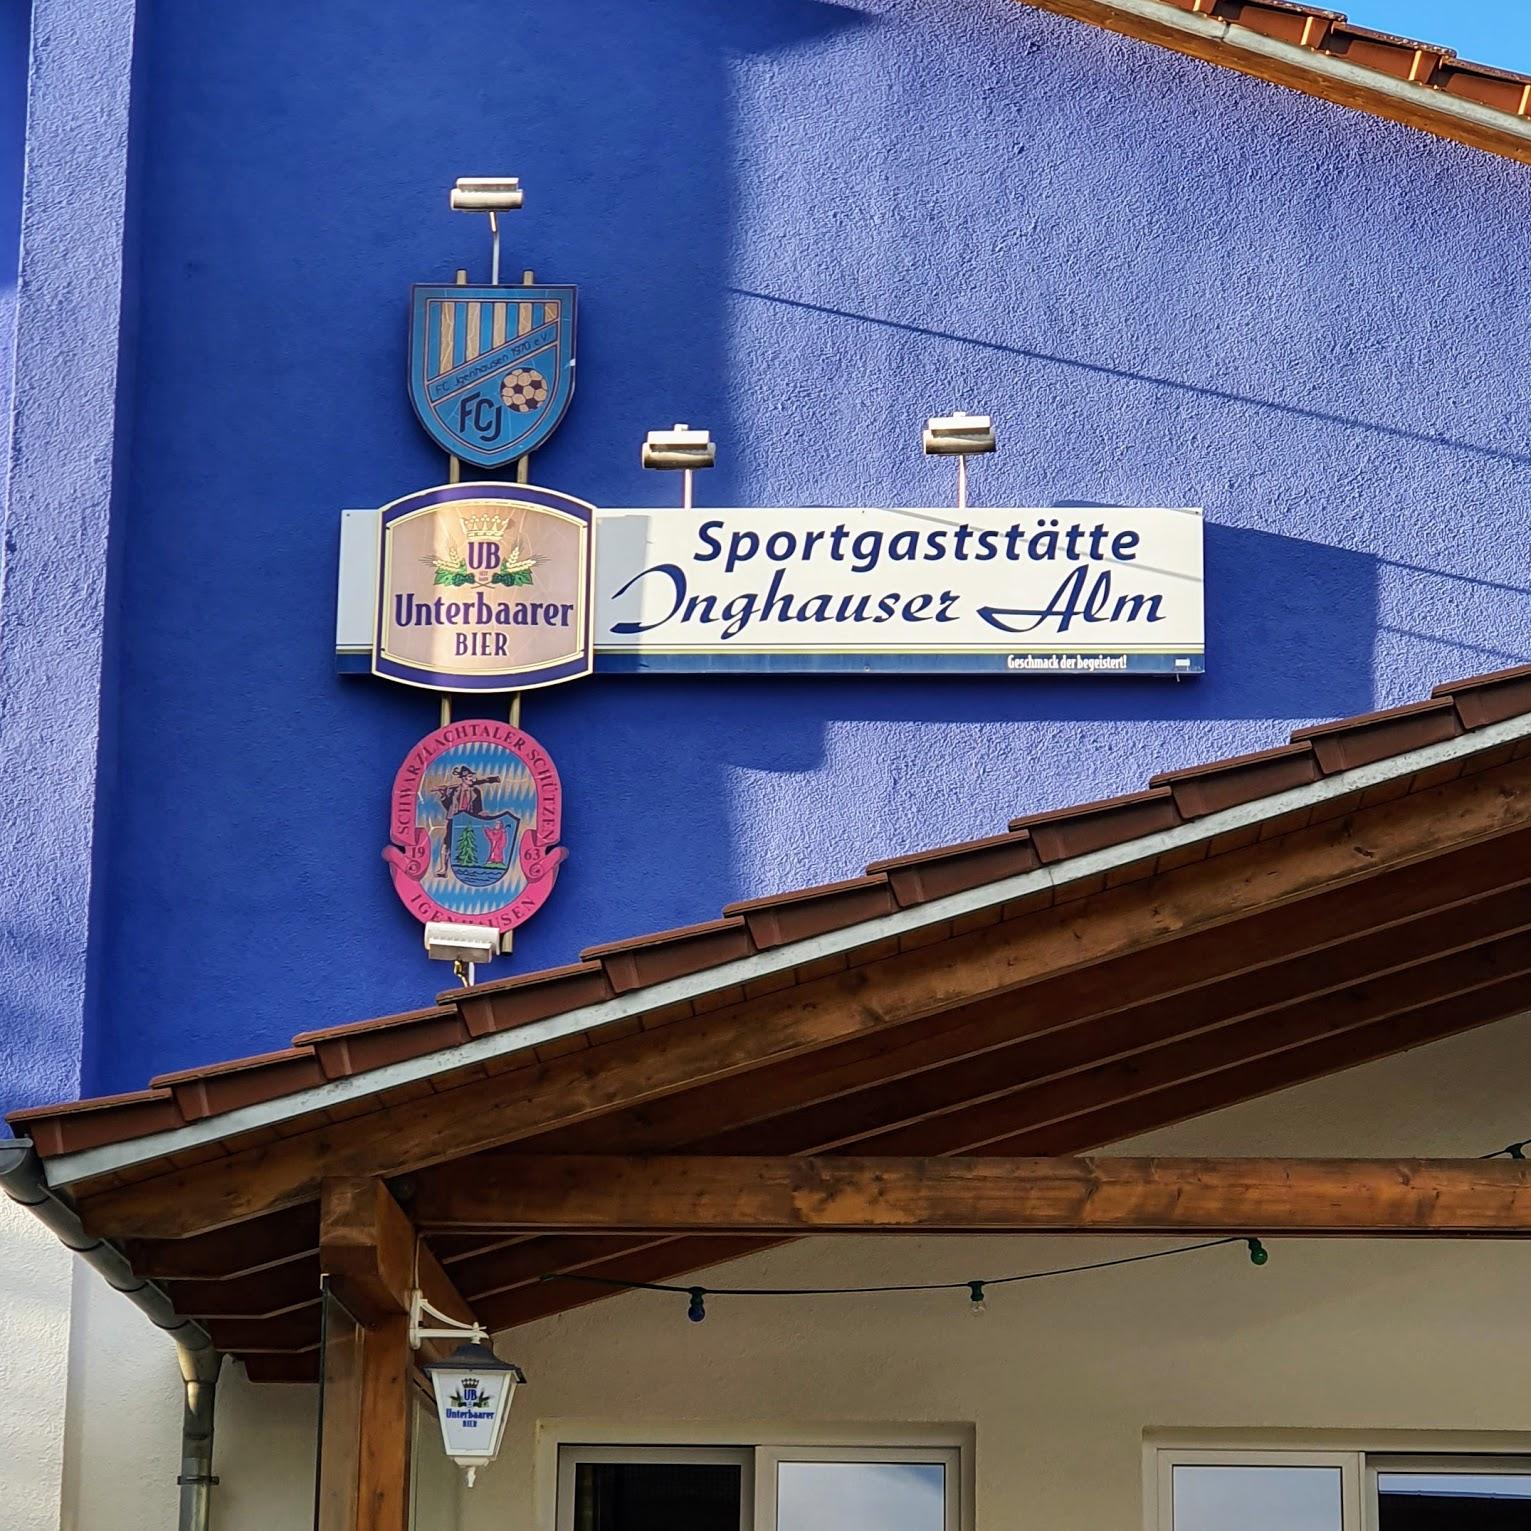 Restaurant "Sportgaststätte Inghauser Alm" in  Hollenbach